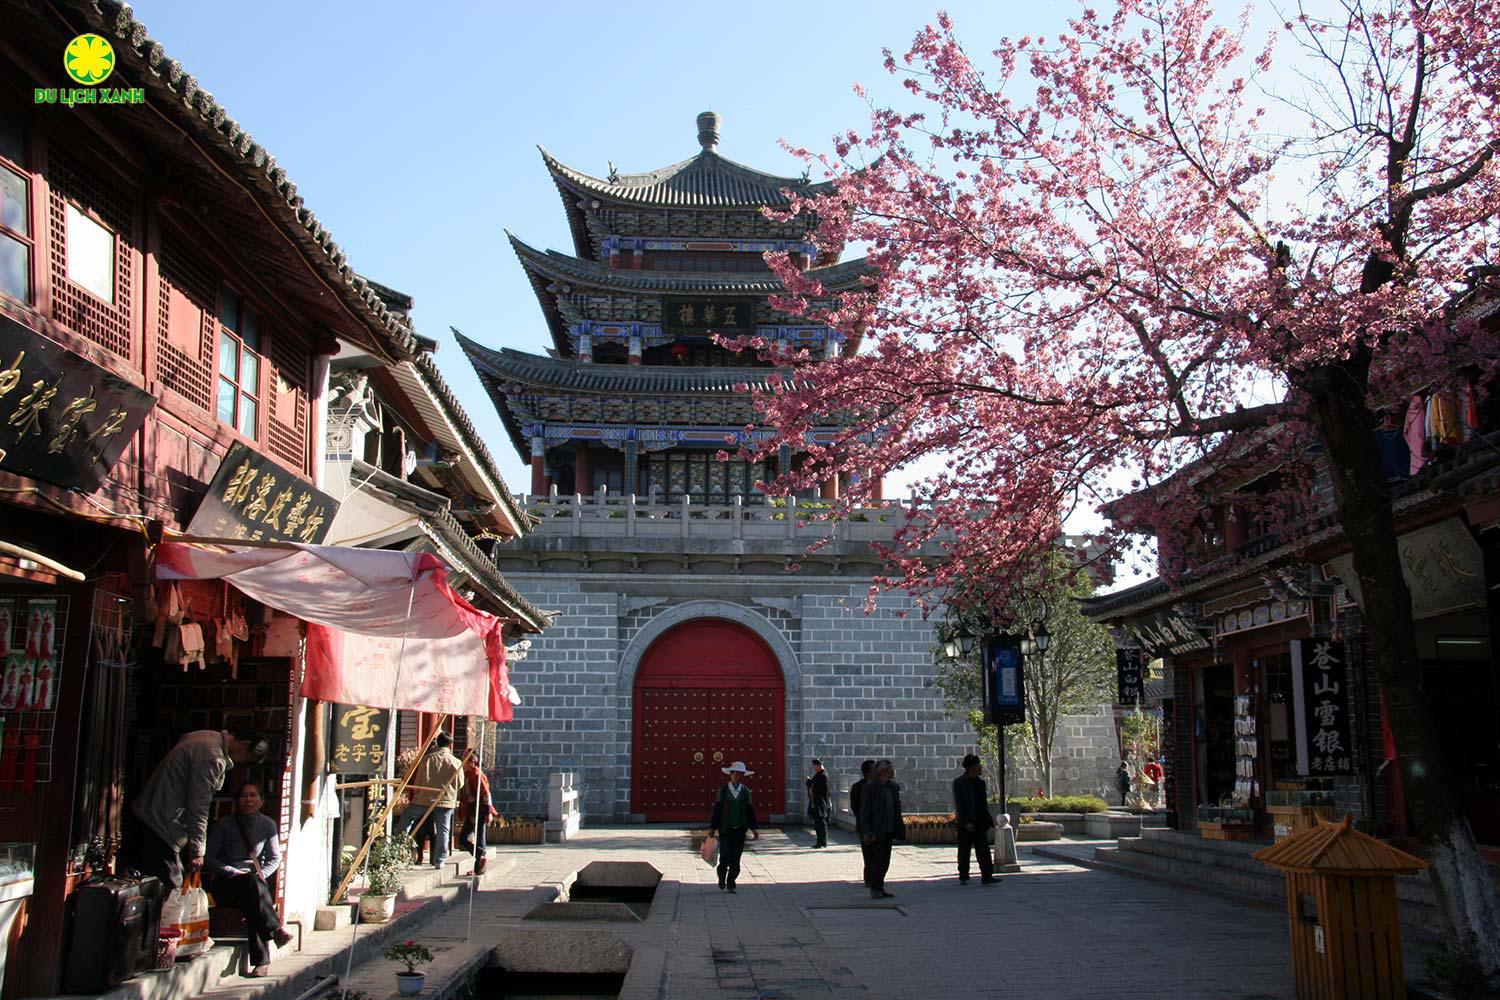 Du lịch Trung Quốc, kinh nghiệm du lịch Trung Quốc, Du lịch Trung Quốc dịp Tết, top 5 điểm đến du lịch Trung Quốc, Du lịch Xanh